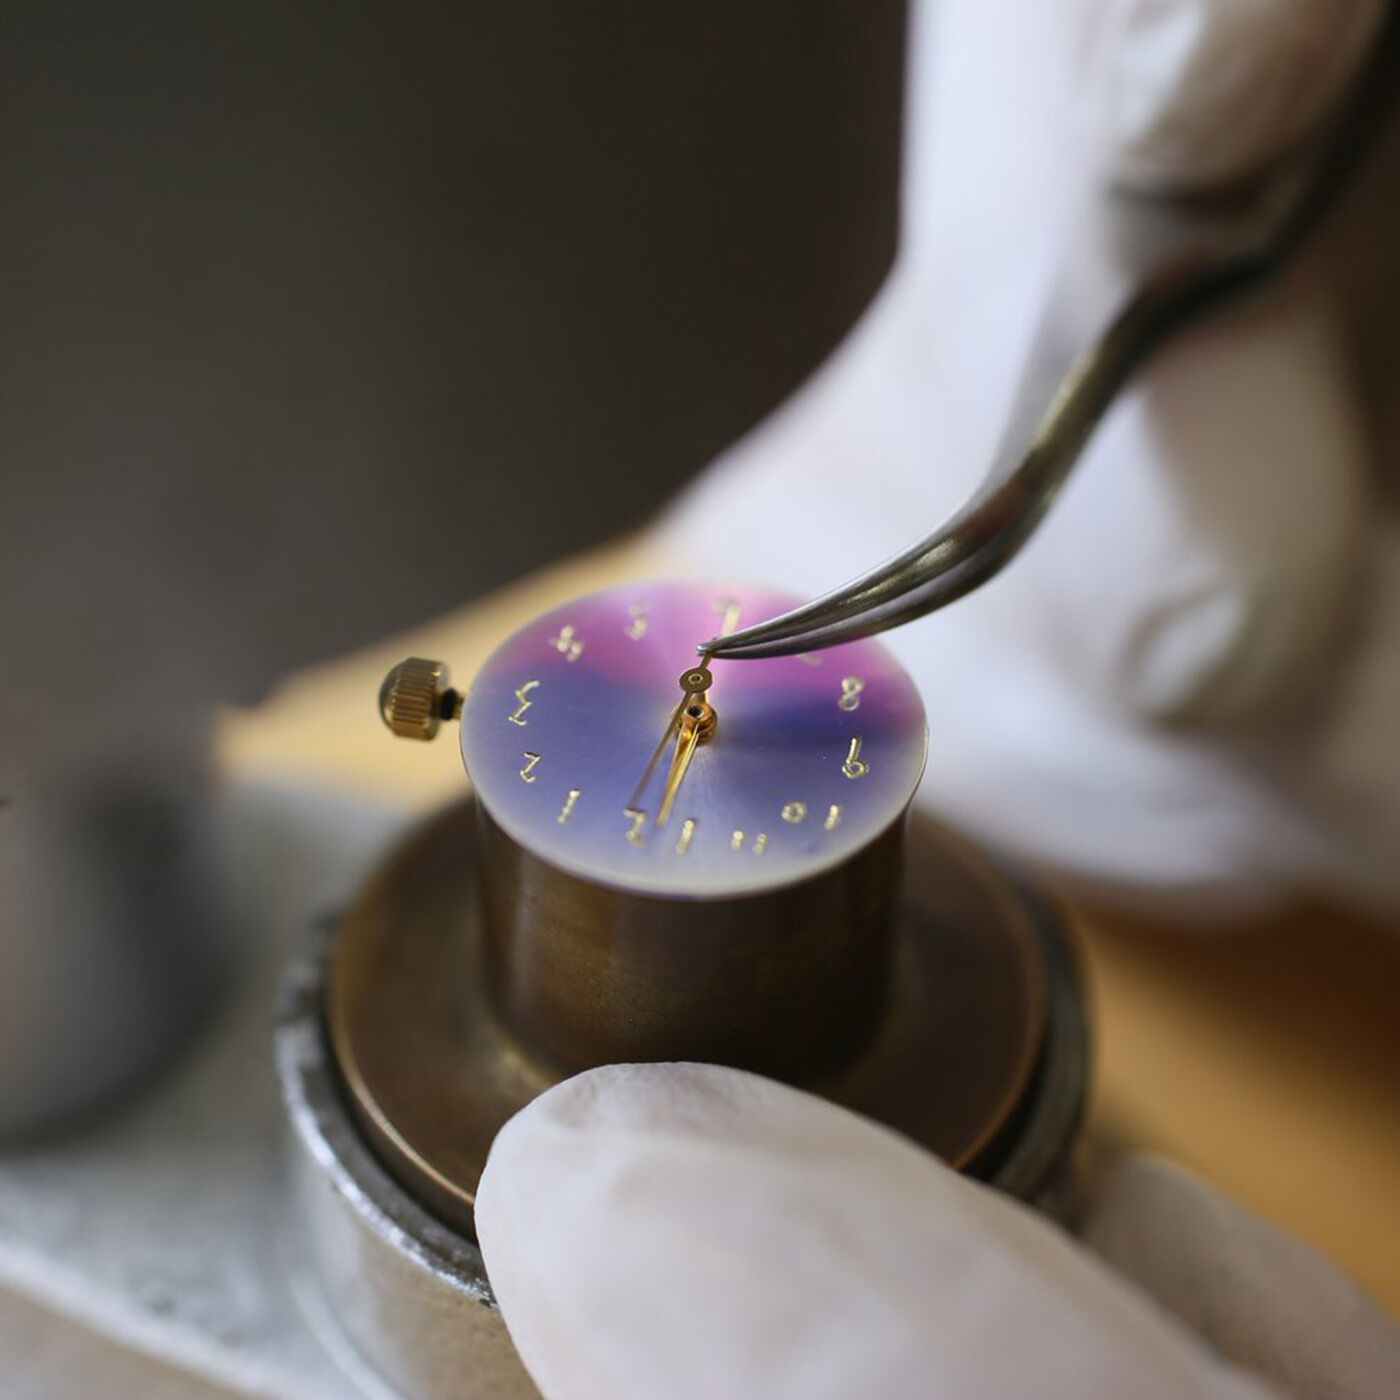 ＆Stories|金沢の時計職人が手掛けた　朝焼けに見惚れる腕時計〈マルベリーパープル〉|針やフレームの取り付けまで工程も、ひとつひとつすべて手作業です。